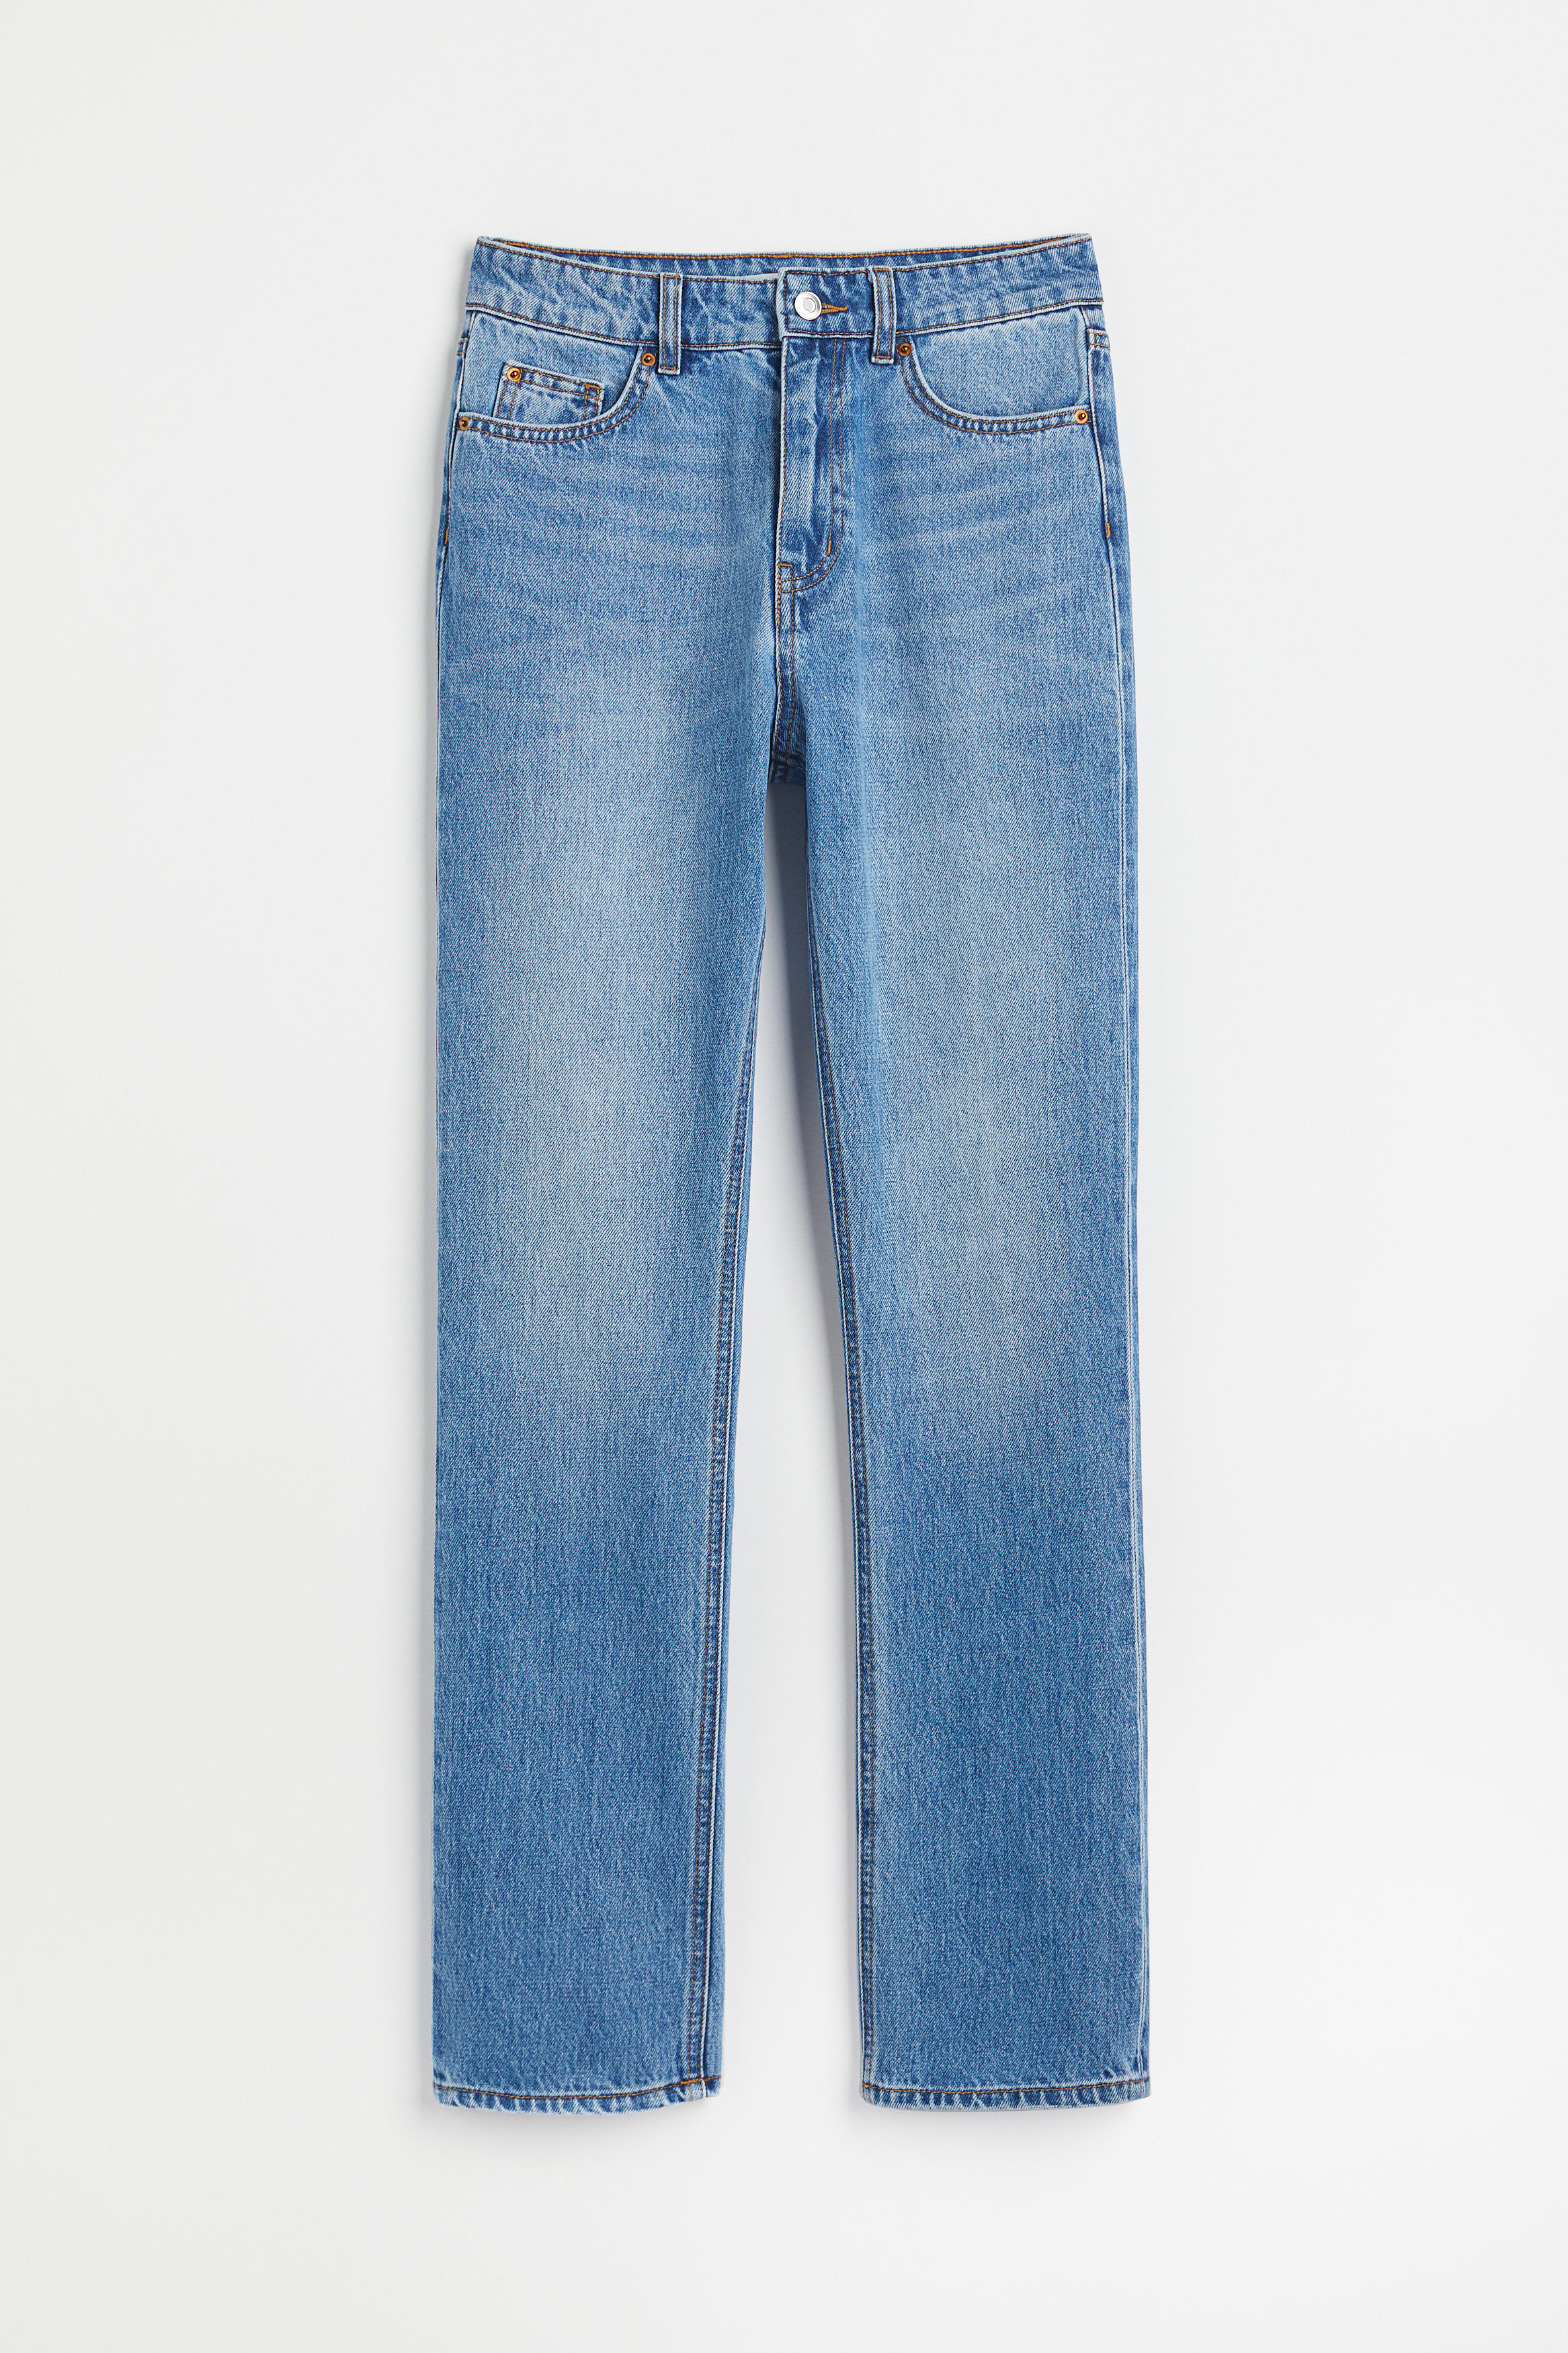 Billede af H&M Slim High Jeans Blå, Skinny jeans. Farve: Blue I størrelse 32